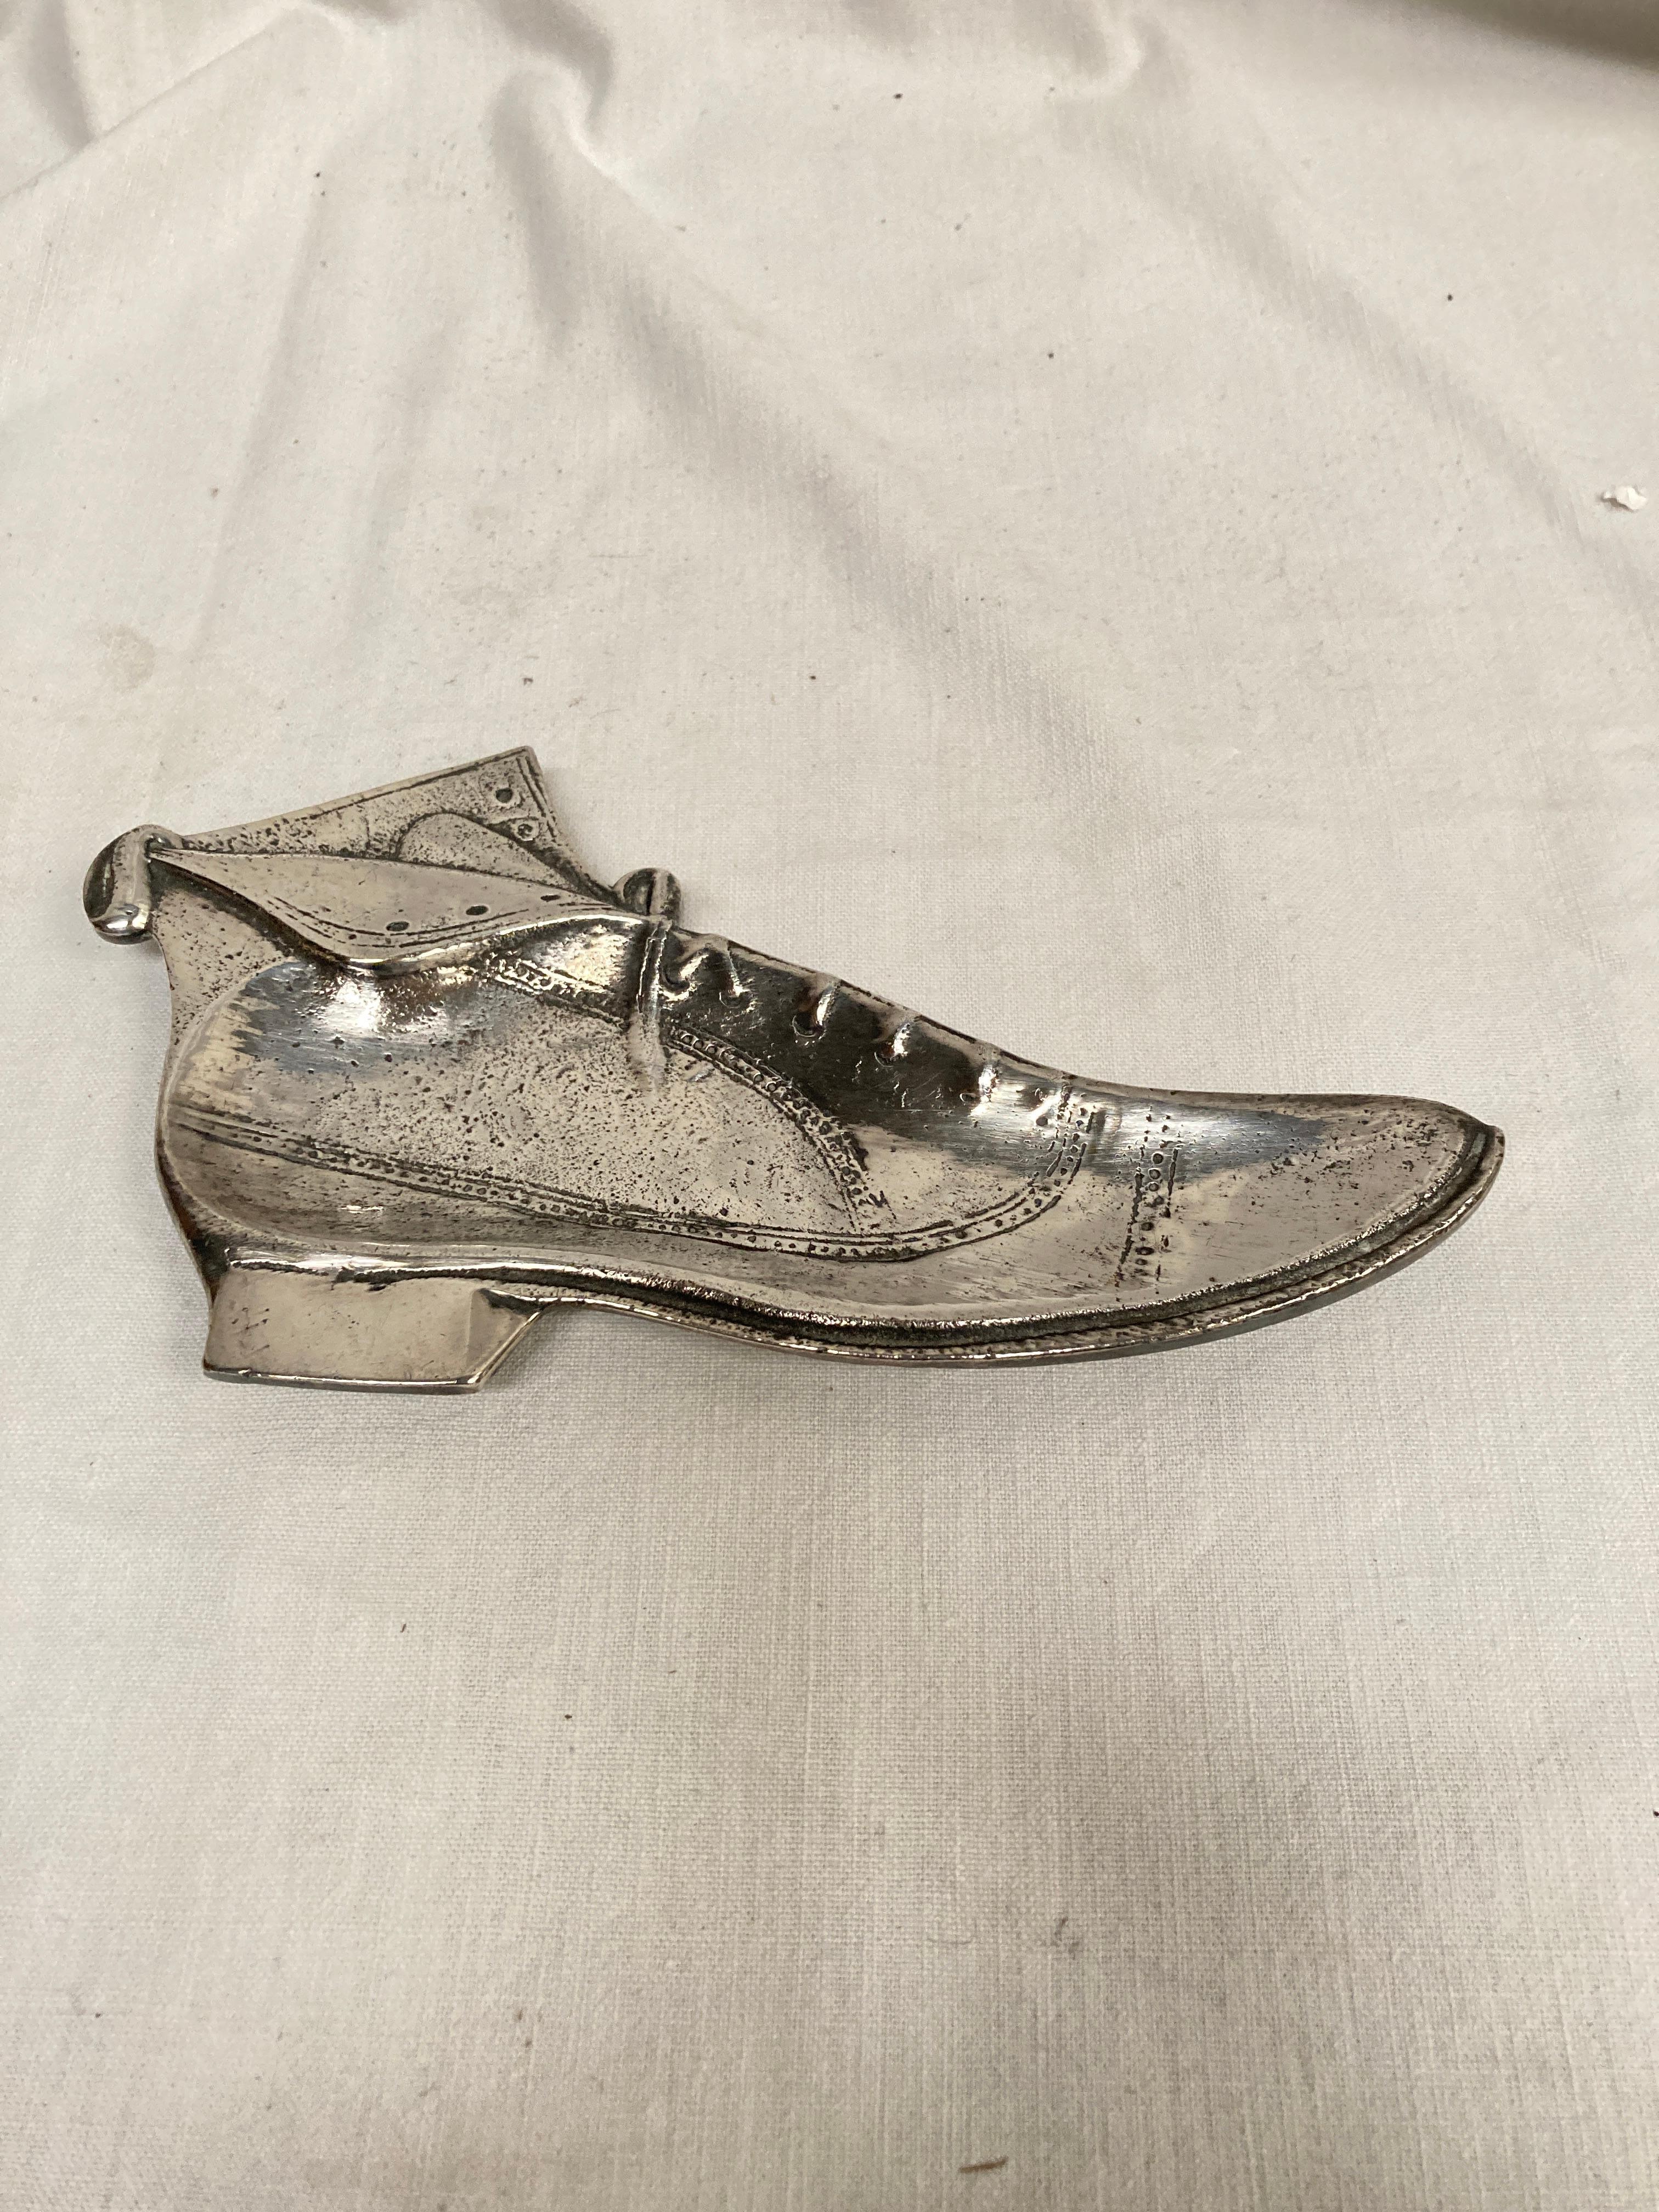 Inusual vide poche de bronce que muestra un zapato
Francia
1960's